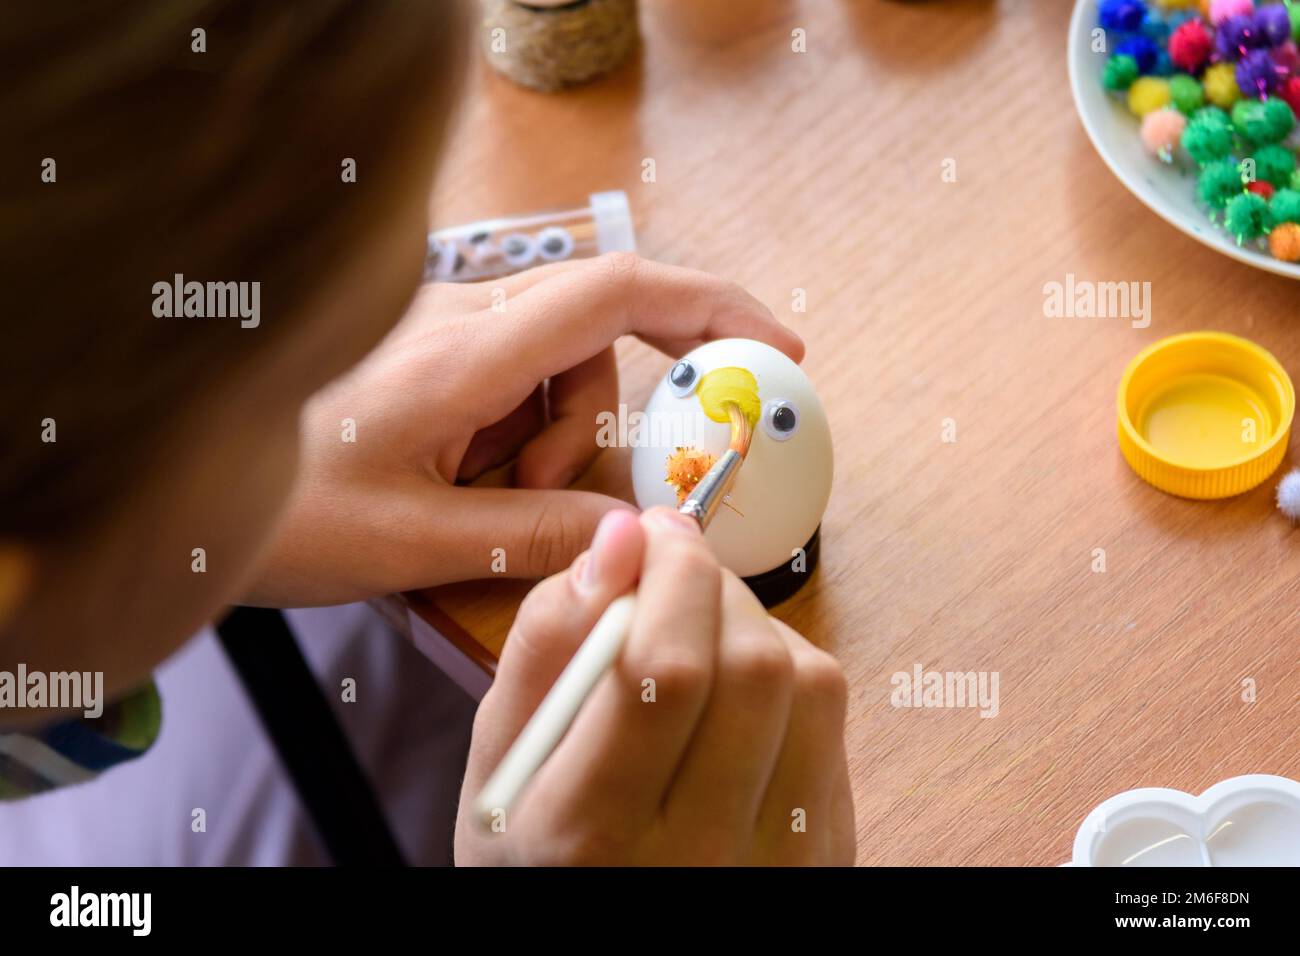 Gros plan des mains d'un enfant peignant des œufs de Pâques Banque D'Images